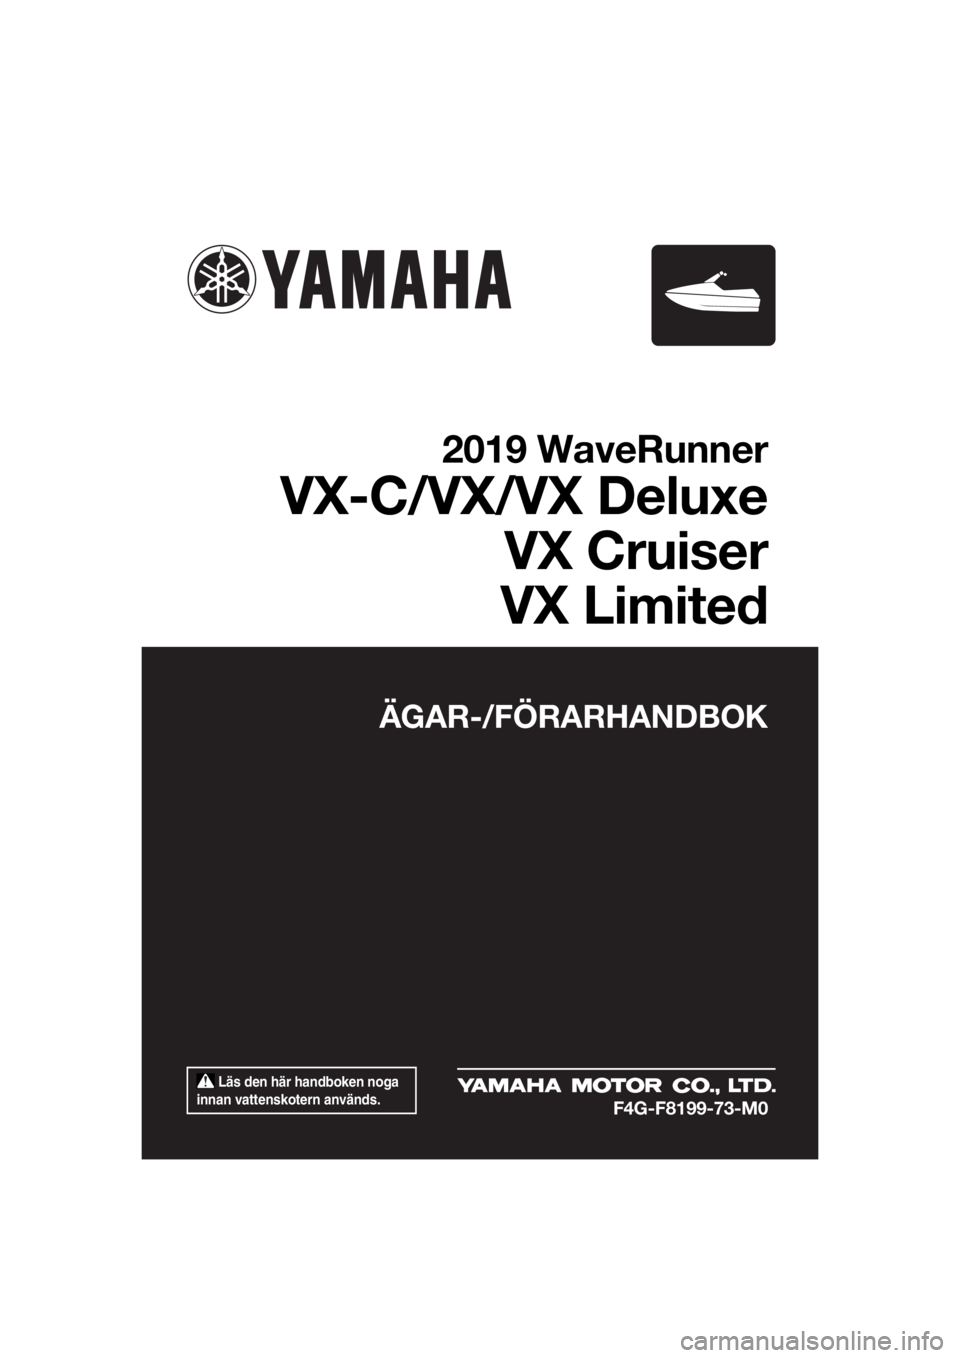 YAMAHA VX-C 2019  Bruksanvisningar (in Swedish)  Läs den här handboken noga 
innan vattenskotern används.
ÄGAR-/FÖRARHANDBOK
2019 WaveRunner
VX-C/VX/VX Deluxe
VX Cruiser
VX Limited
F4G-F8199-73-M0
UF4G73M0.book  Page 1  Thursday, May 24, 2018 